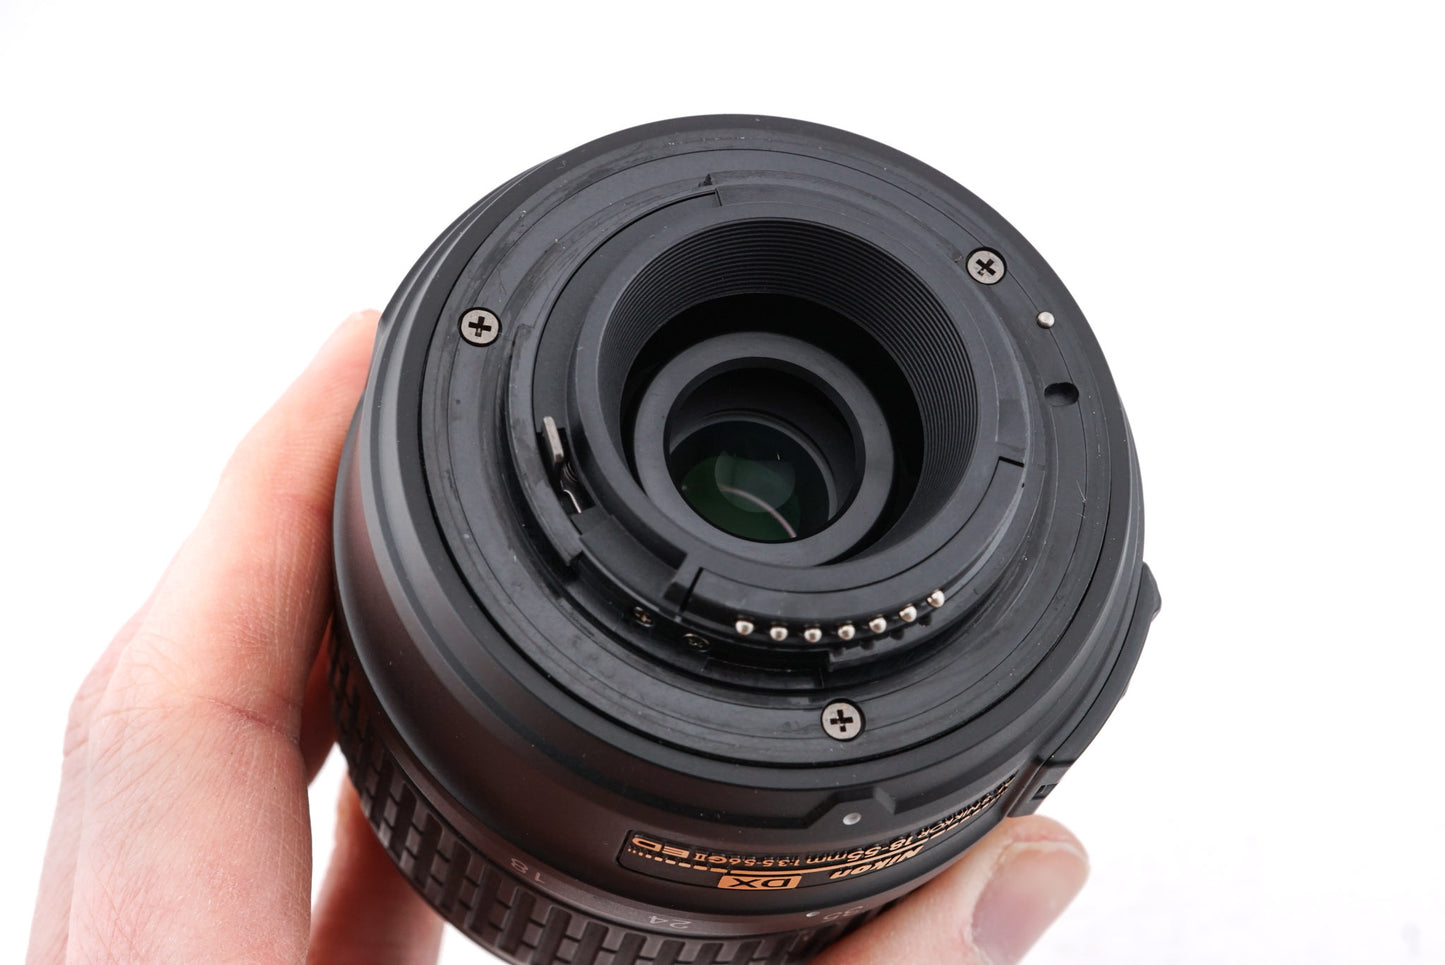 Nikon 18-55mm f3.5-5.6 G ED II AF-S Nikkor